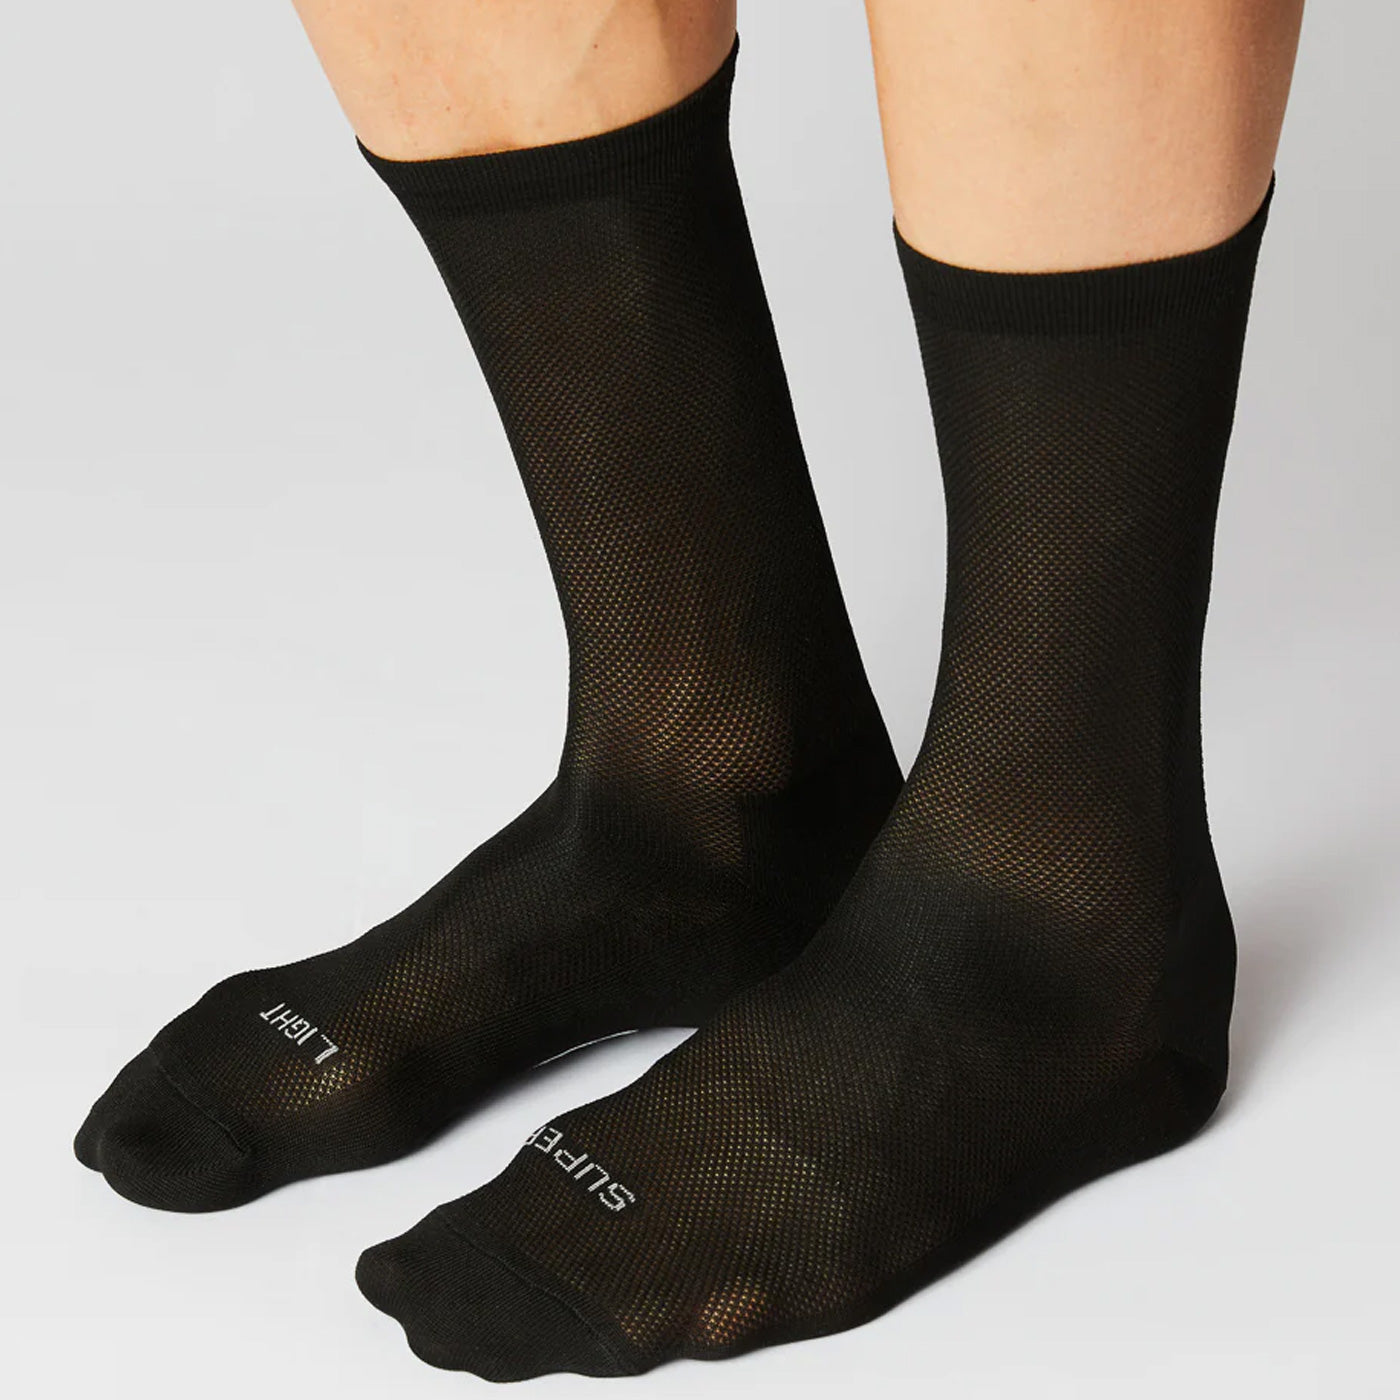 Fingercrossed Super Light socks - Black | All4cycling